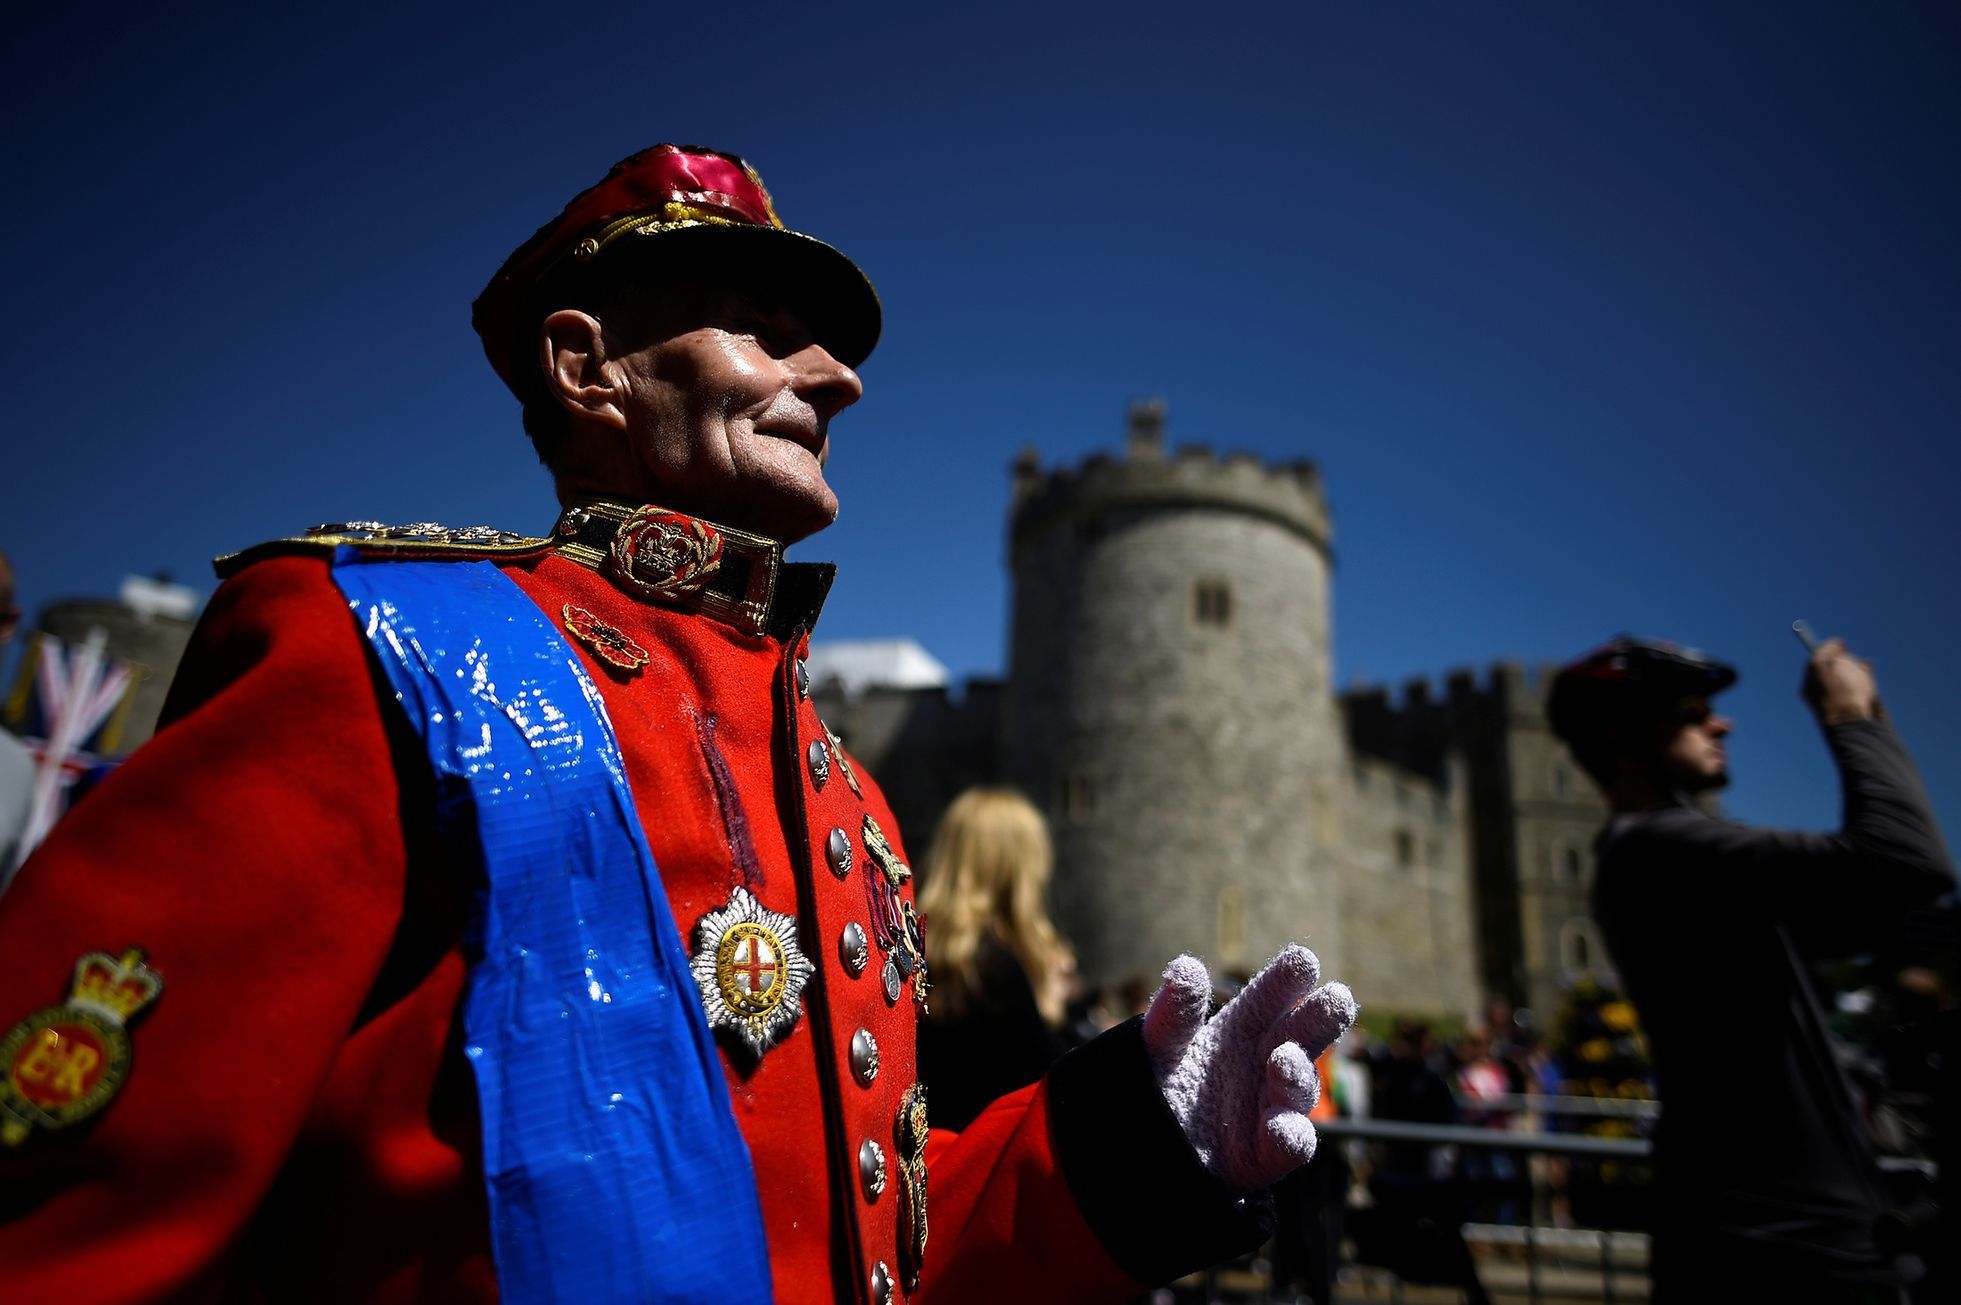 FOTOGALERIE / Přípravy na královskou svatbu / Prince Harry a Meghan Markle / Reuters / 11